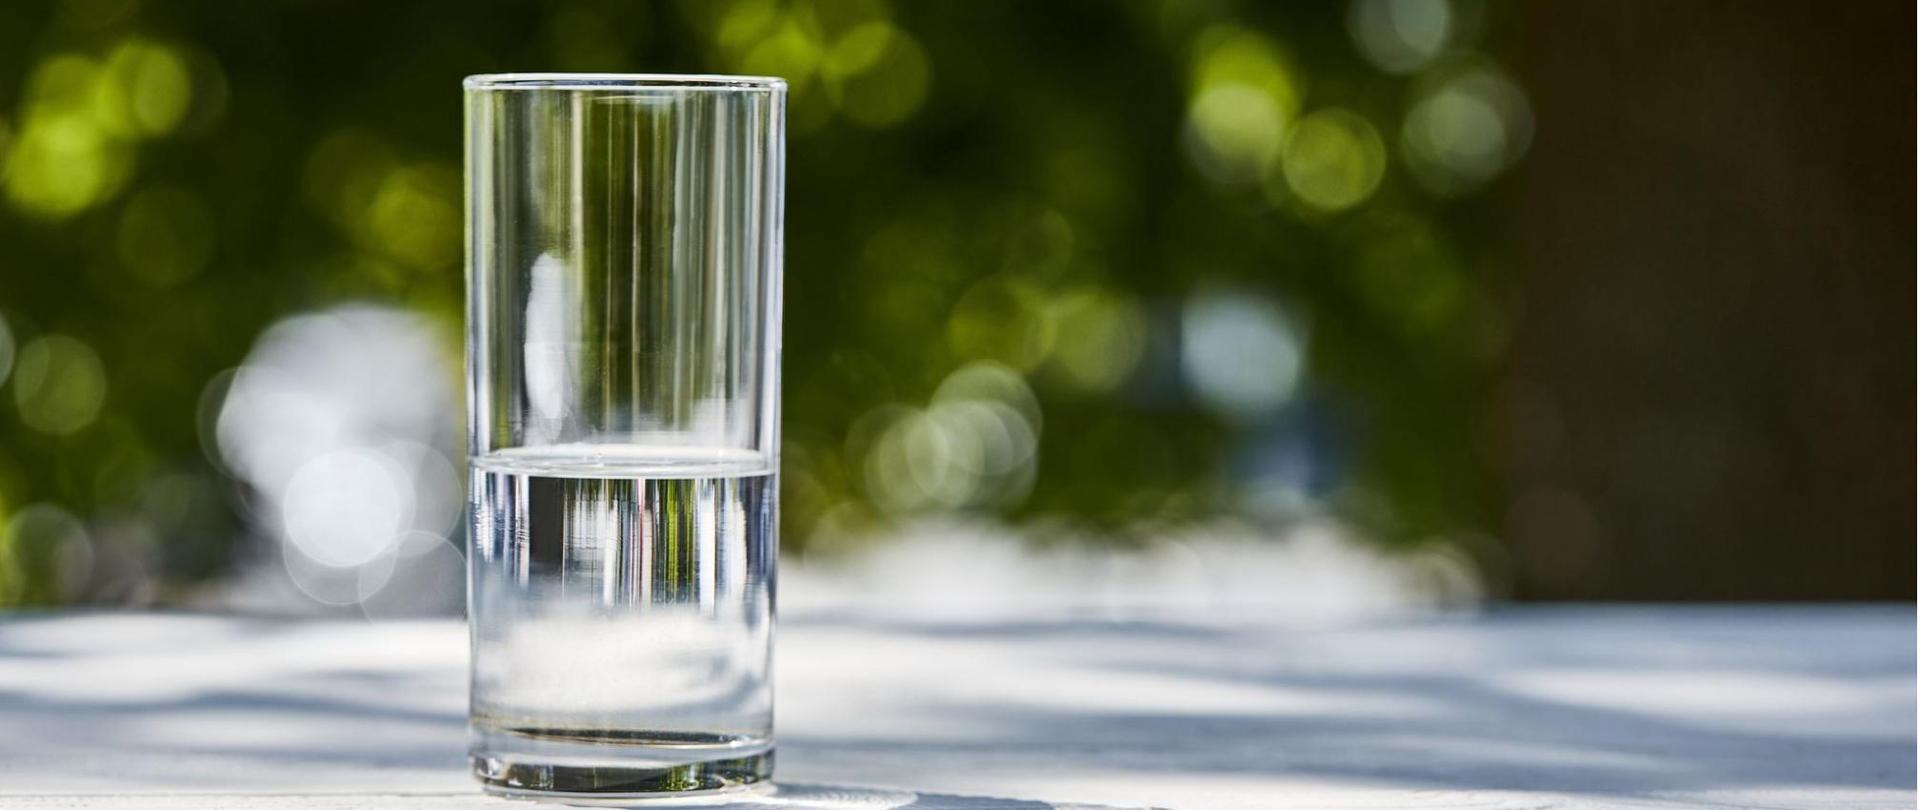 Na zdjęciu jest szklanka wody, która stoi na stole.